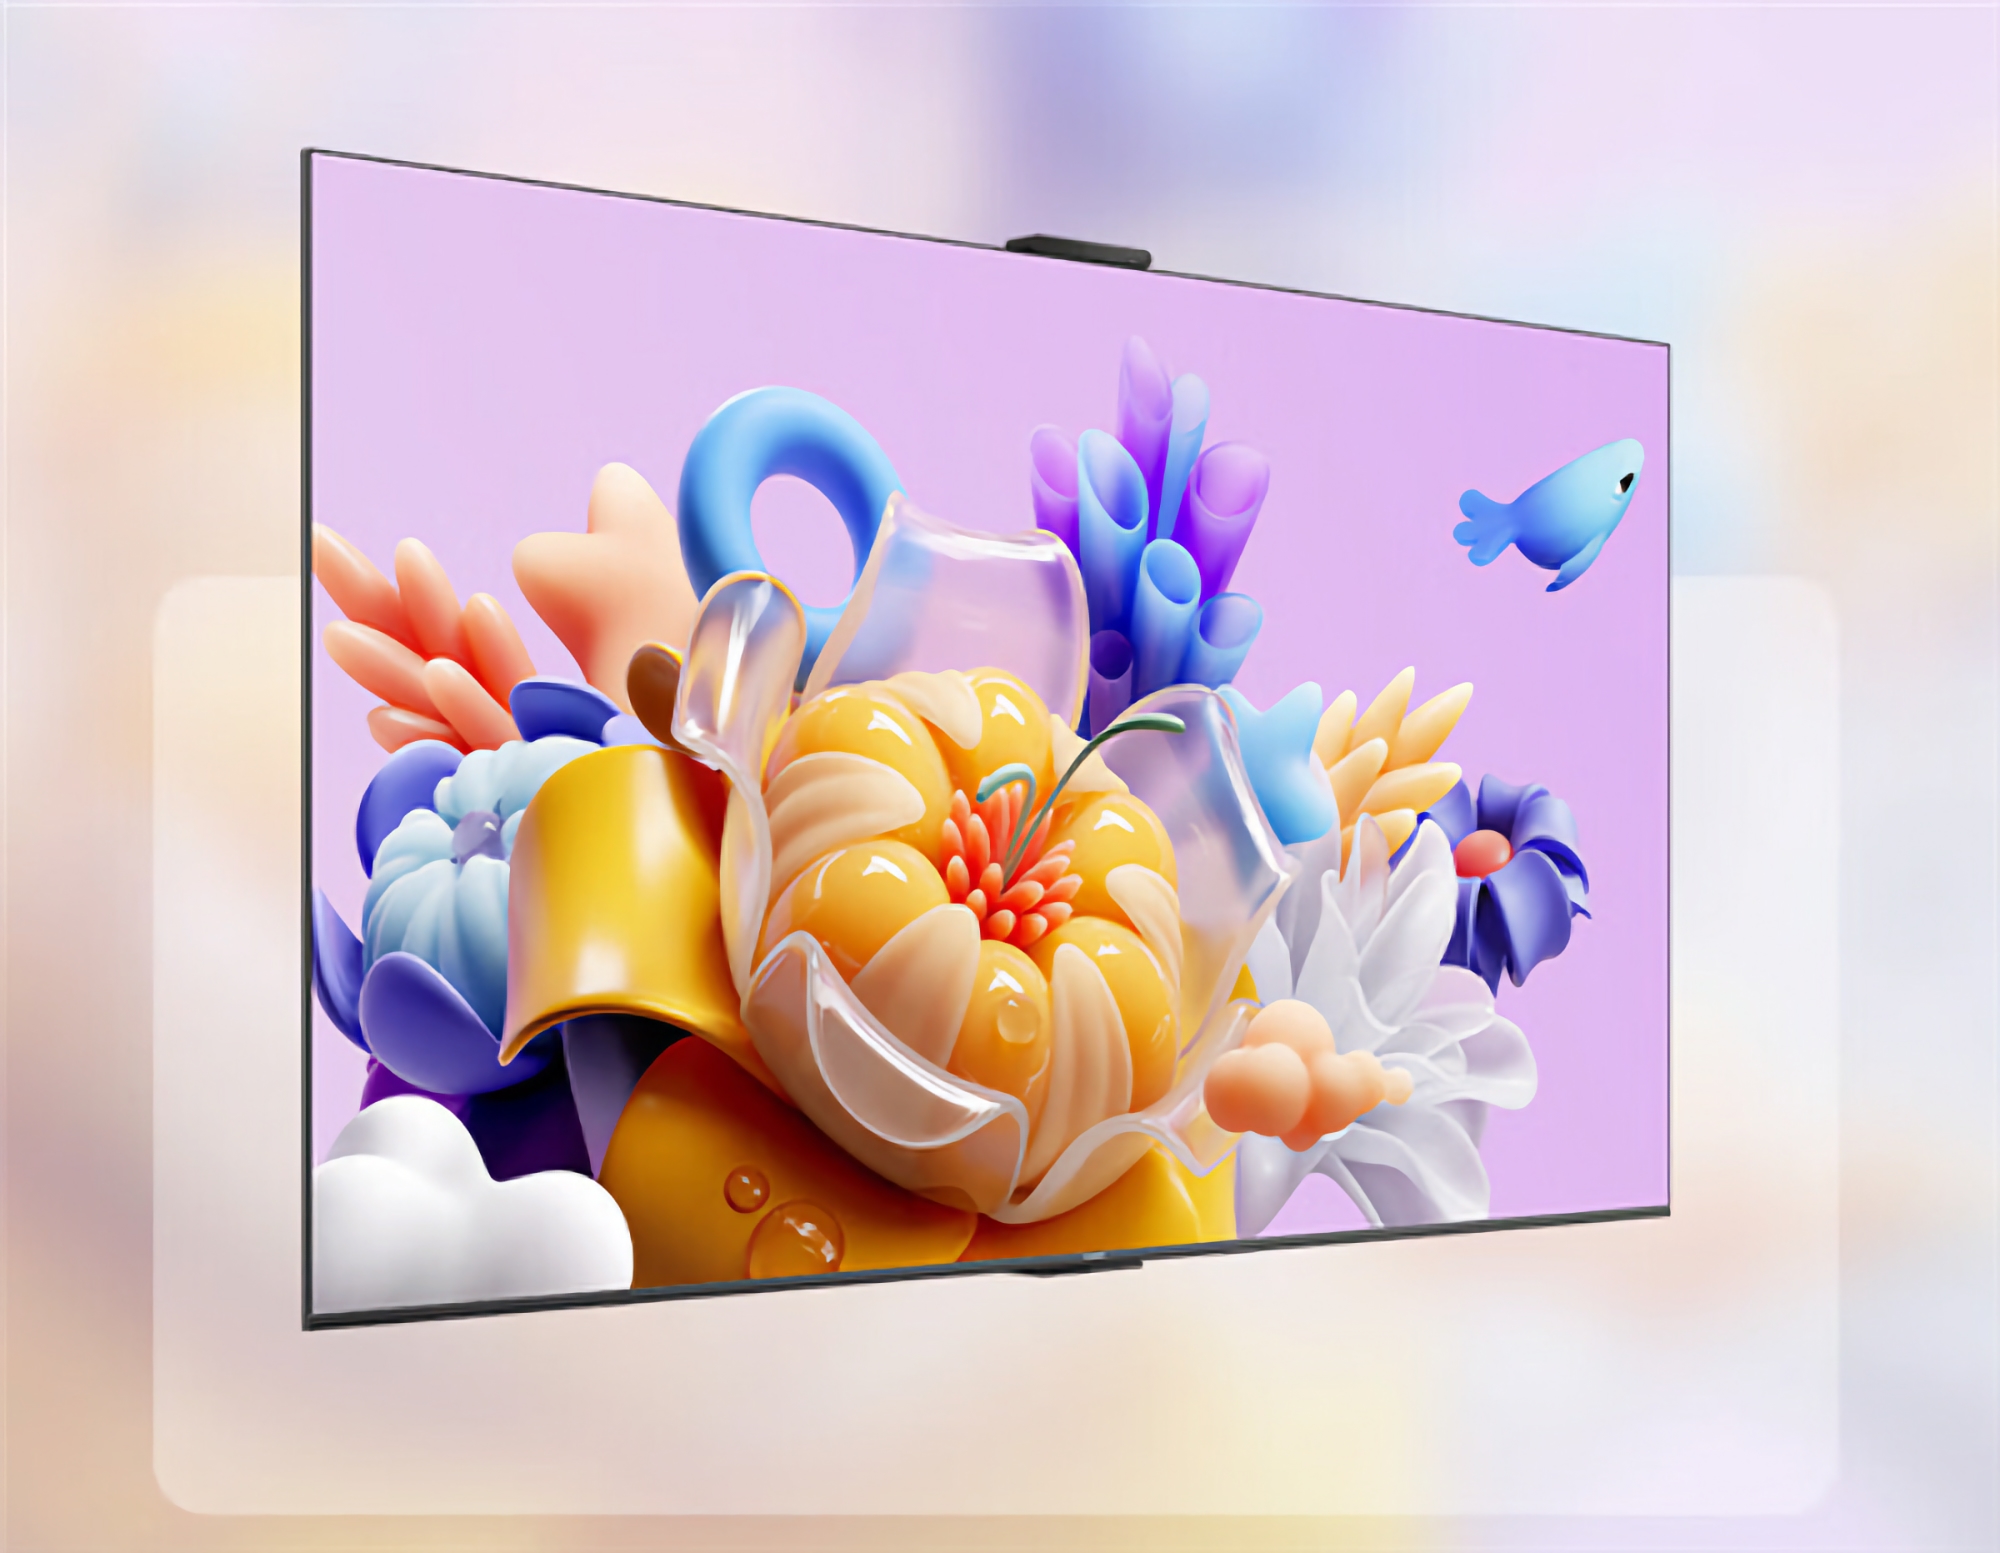 Rykter: Huawei vil avduke en ny smart-TV med en 75-tommers skjerm 14. mars.